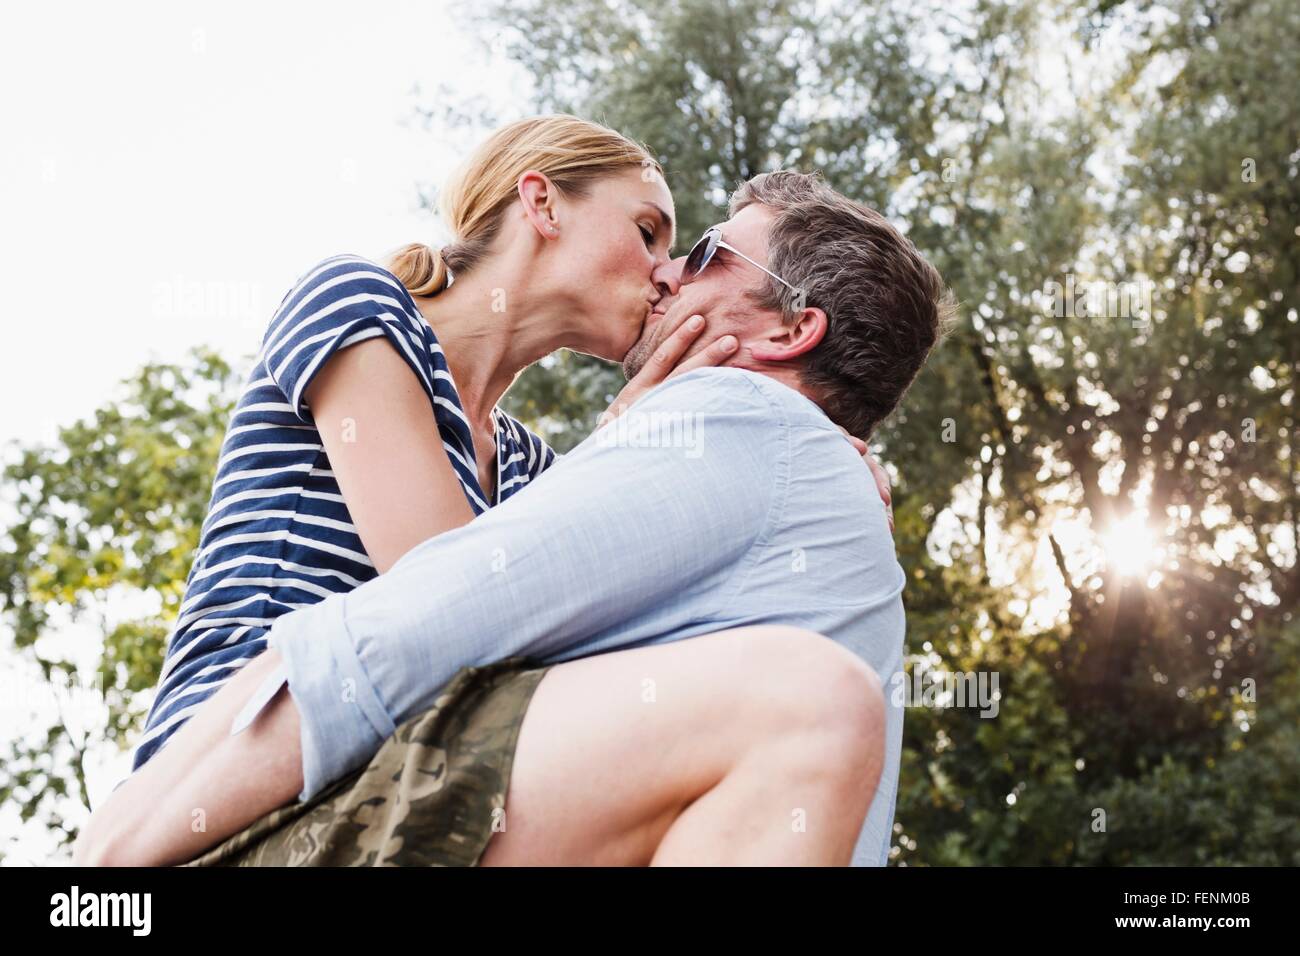 Ángulo de visión baja de pareja compartiendo apasionado beso en el parque Foto de stock